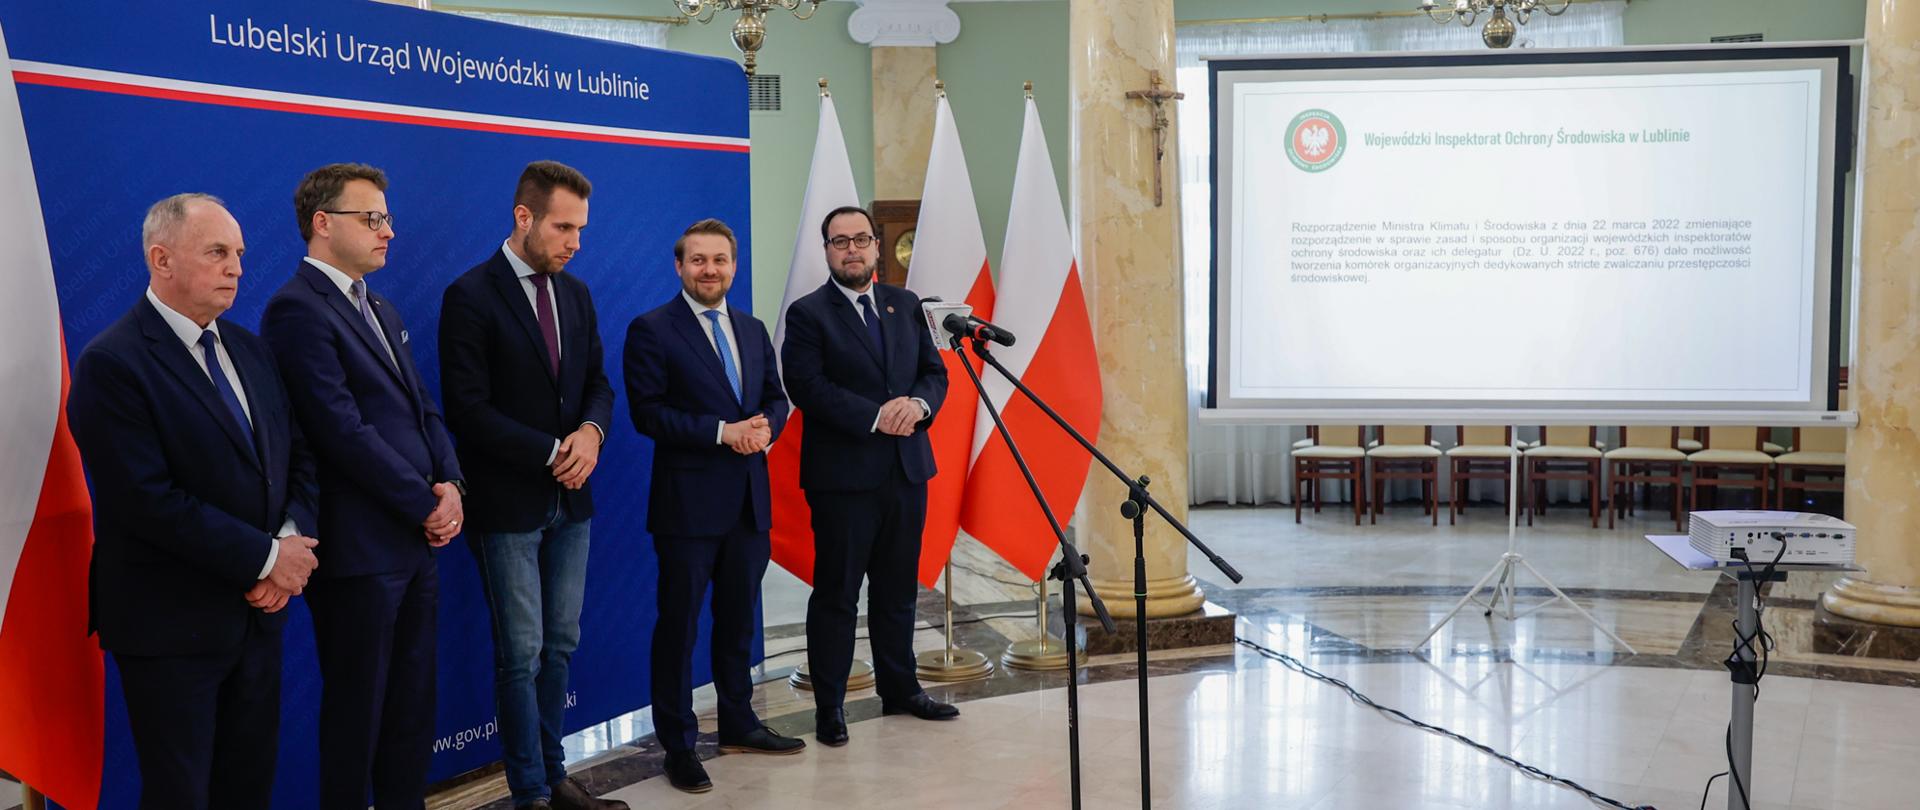 Konferencja prasowa z okazji inauguracji działania Wydziału Zwalczania Przestępczości Środowiskowej w strukturach Wojewódzkiego Inspektoratu Ochrony Środowiska w Lublinie.